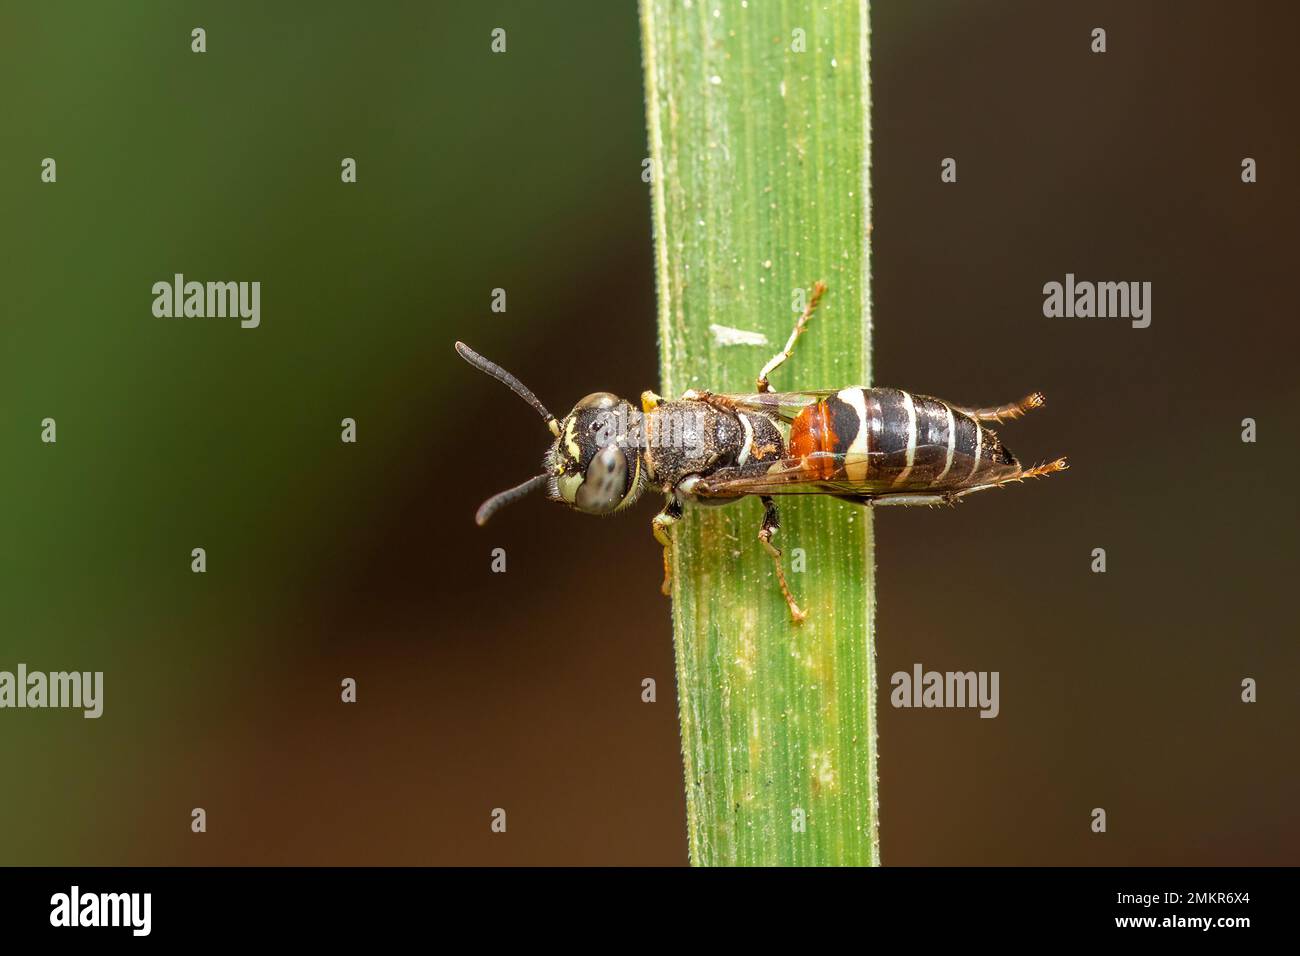 Image de petite abeille ou abeille naine (APIs florea) sur la feuille verte sur fond naturel. Insecte. Animal. Banque D'Images